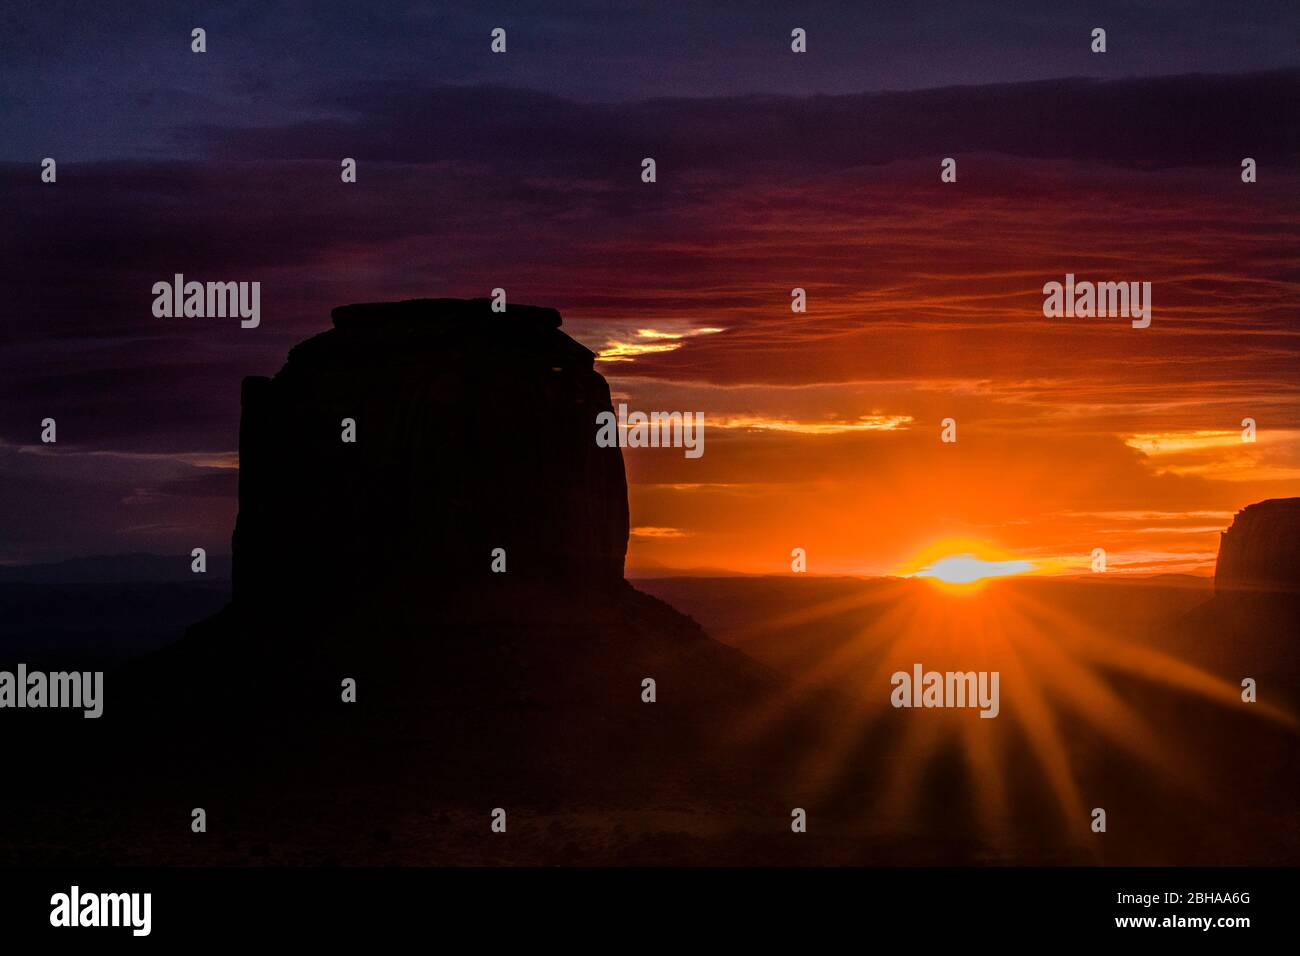 Le formazioni rocciose di Mittens butte nel deserto al tramonto, Monument Valley, Utah, USA Foto Stock